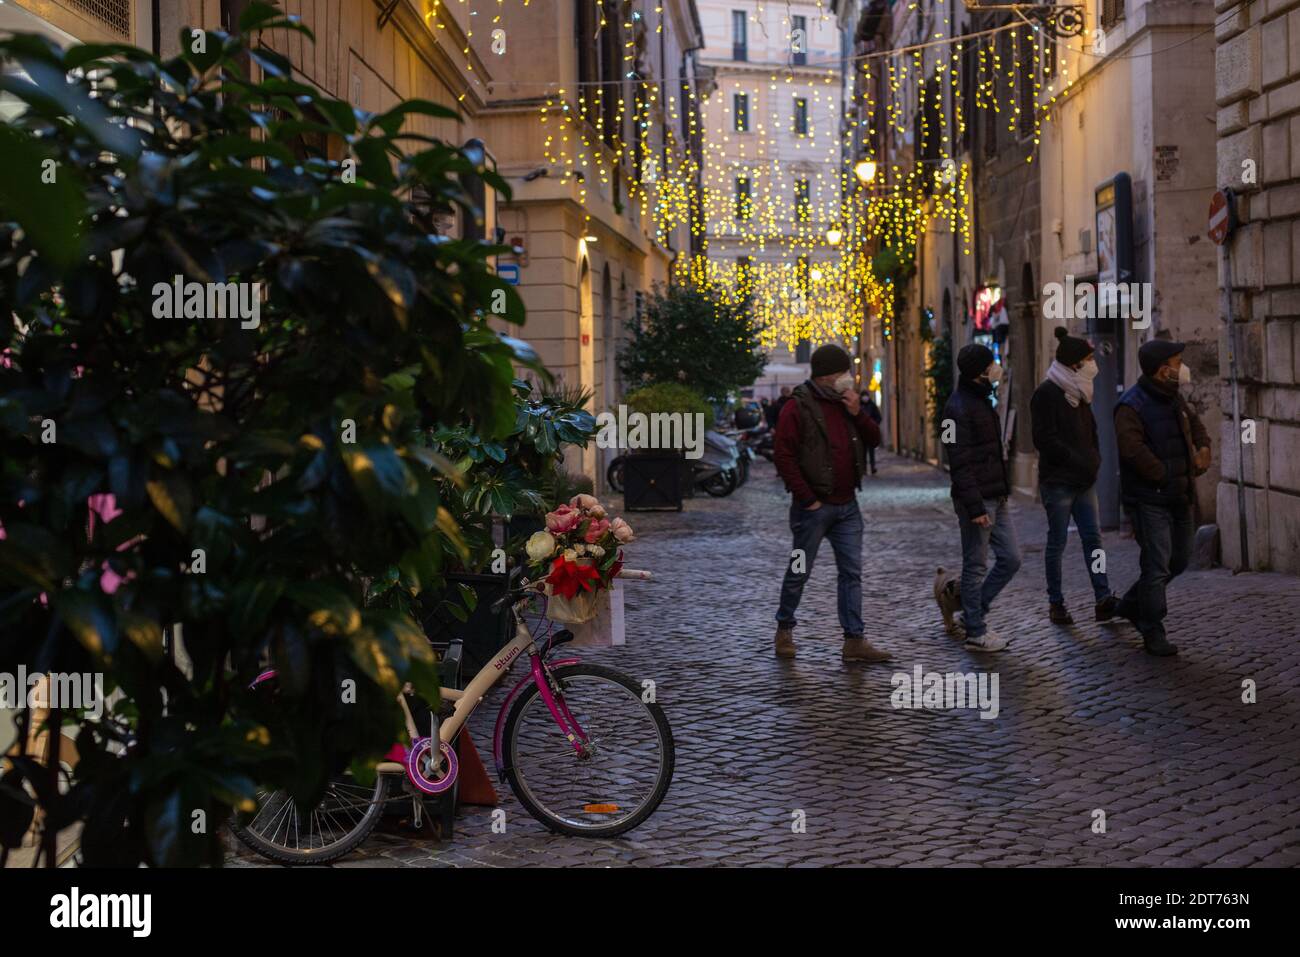 Roma, Italia: Giornate di shopping natalizie, via dei banchi vecchi. © Andrea Sabbadini Foto Stock